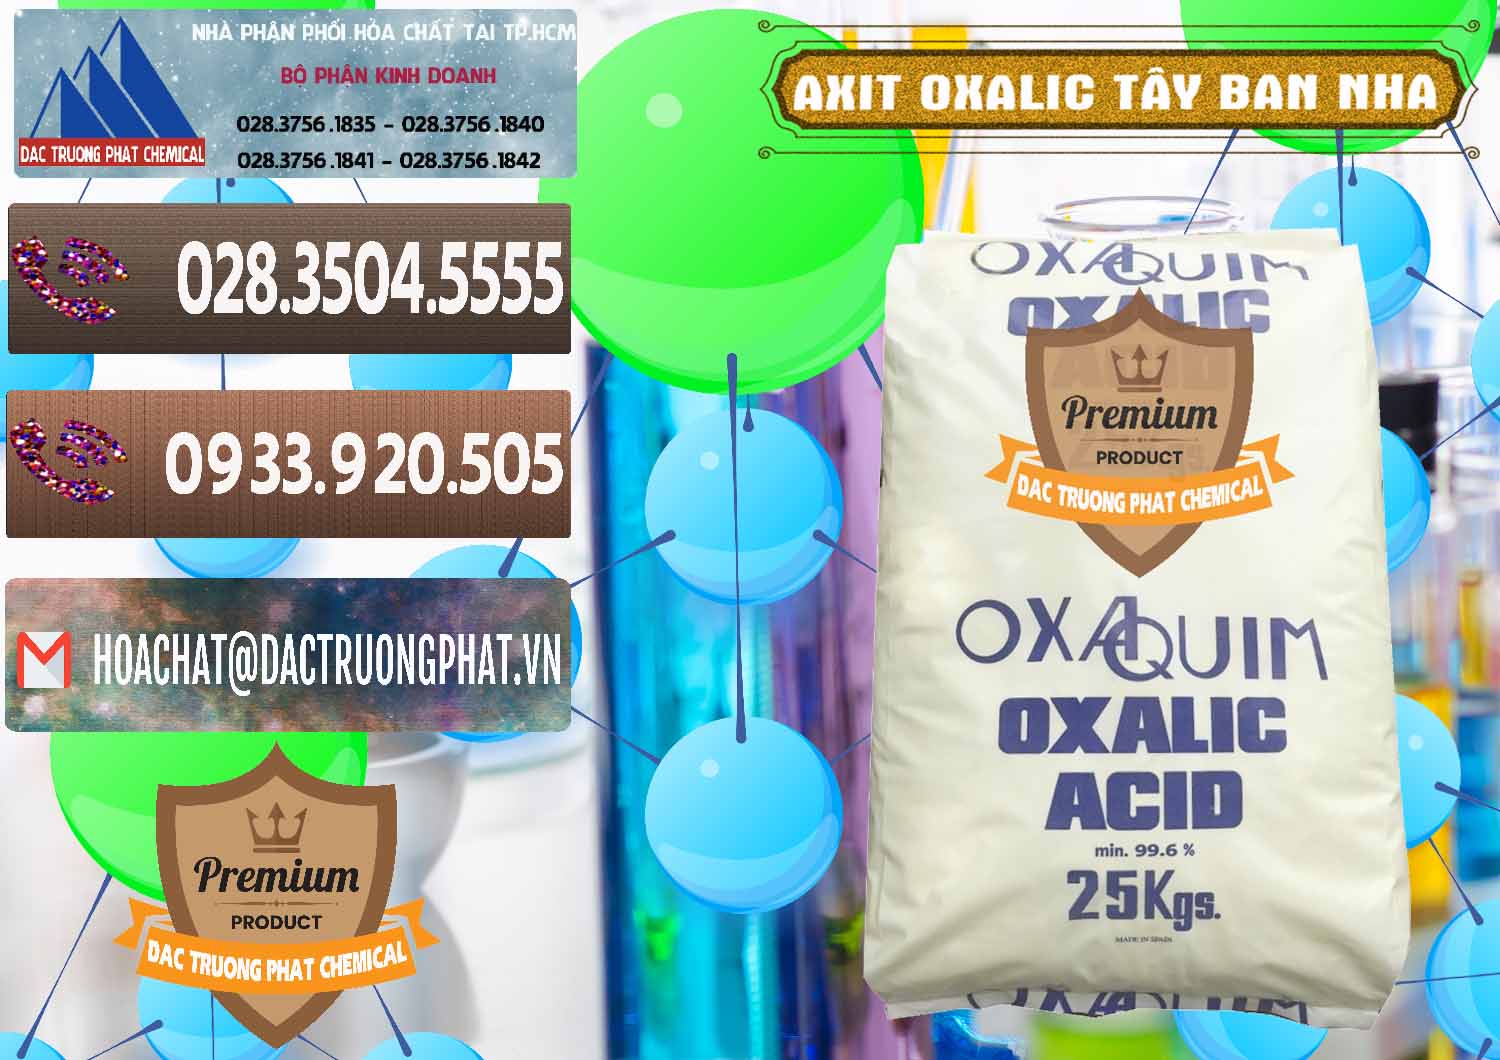 Chuyên cung ứng và bán Acid Oxalic – Axit Oxalic 99.6% Tây Ban Nha Spain - 0269 - Nơi chuyên nhập khẩu _ phân phối hóa chất tại TP.HCM - hoachatviet.net